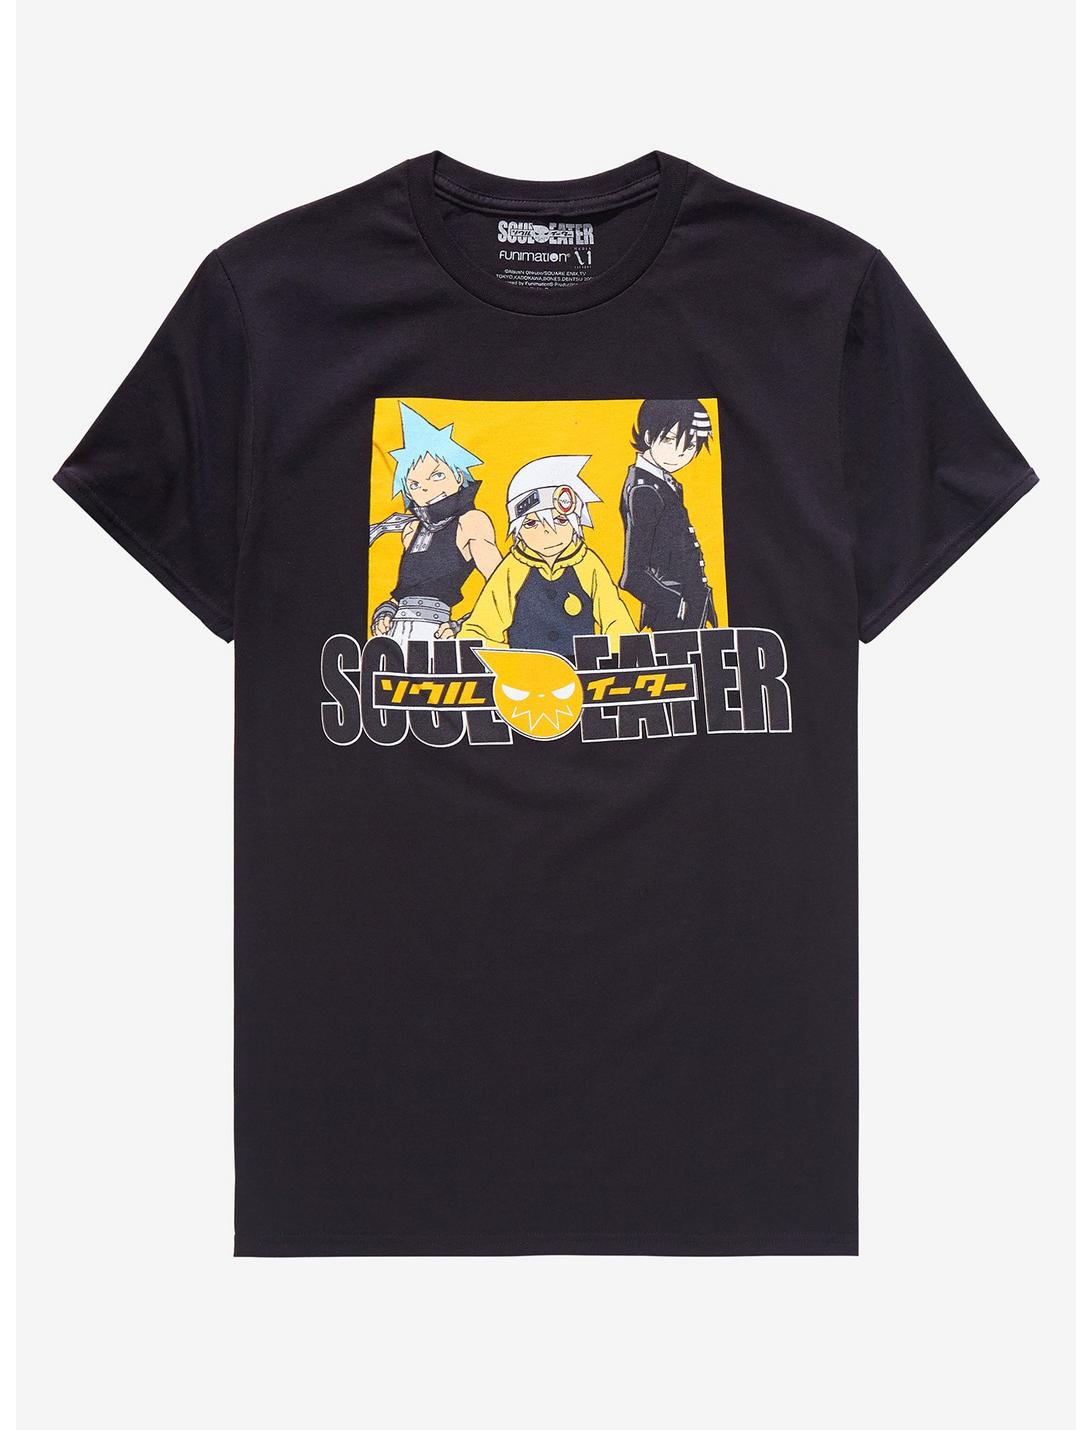 Soul Eater Trio Square Portrait T-Shirt - BoxLunch Exclusive, BLACK, hi-res